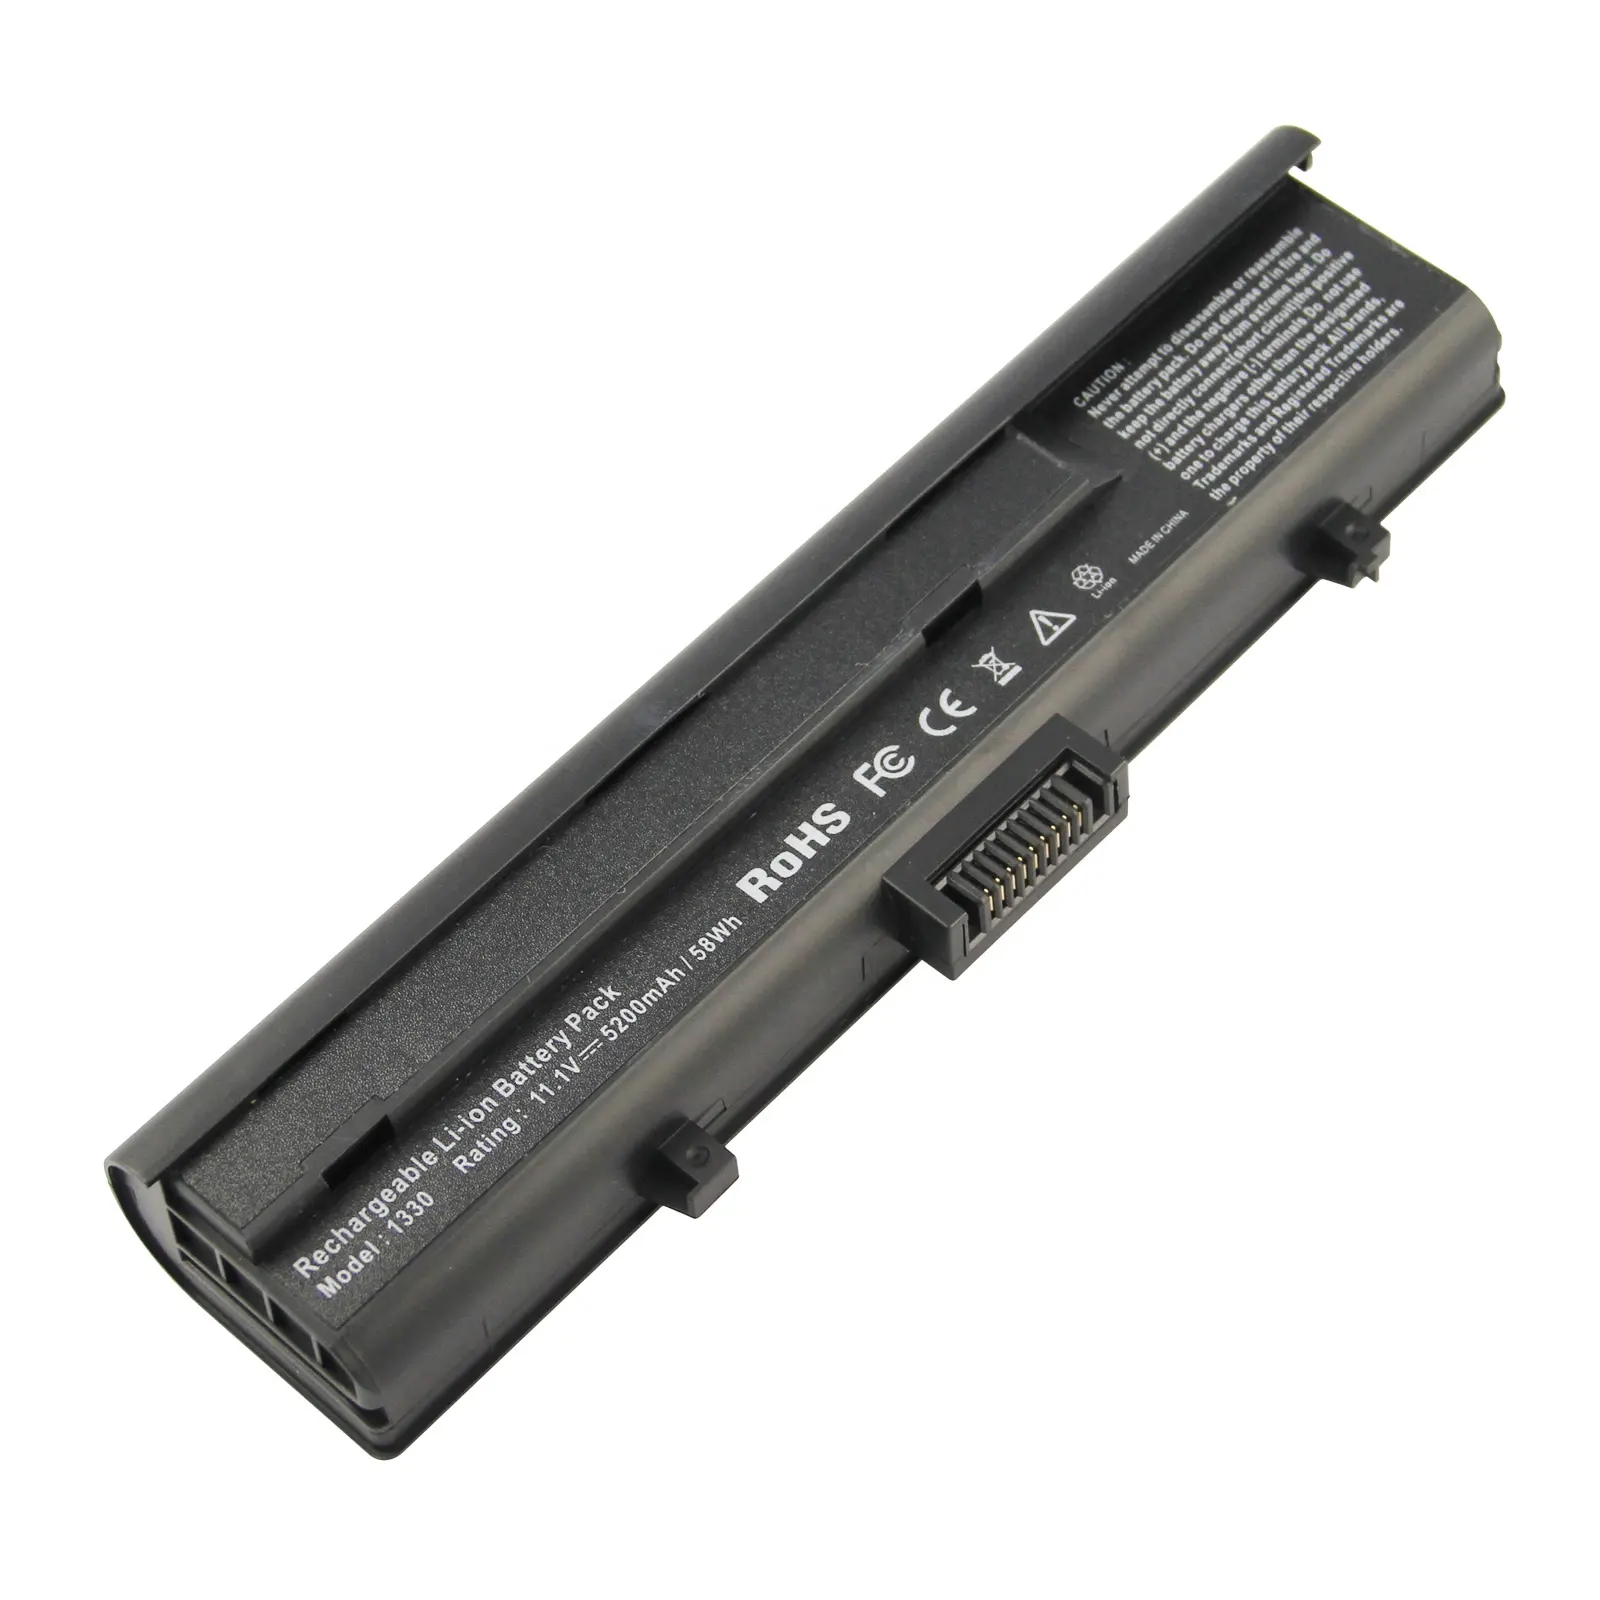 Marca de batería del ordenador portátil para Dell XPS M1330 M1350 Inspiron 1318 de 312-0566, 312-0739, 451-10528 TX826